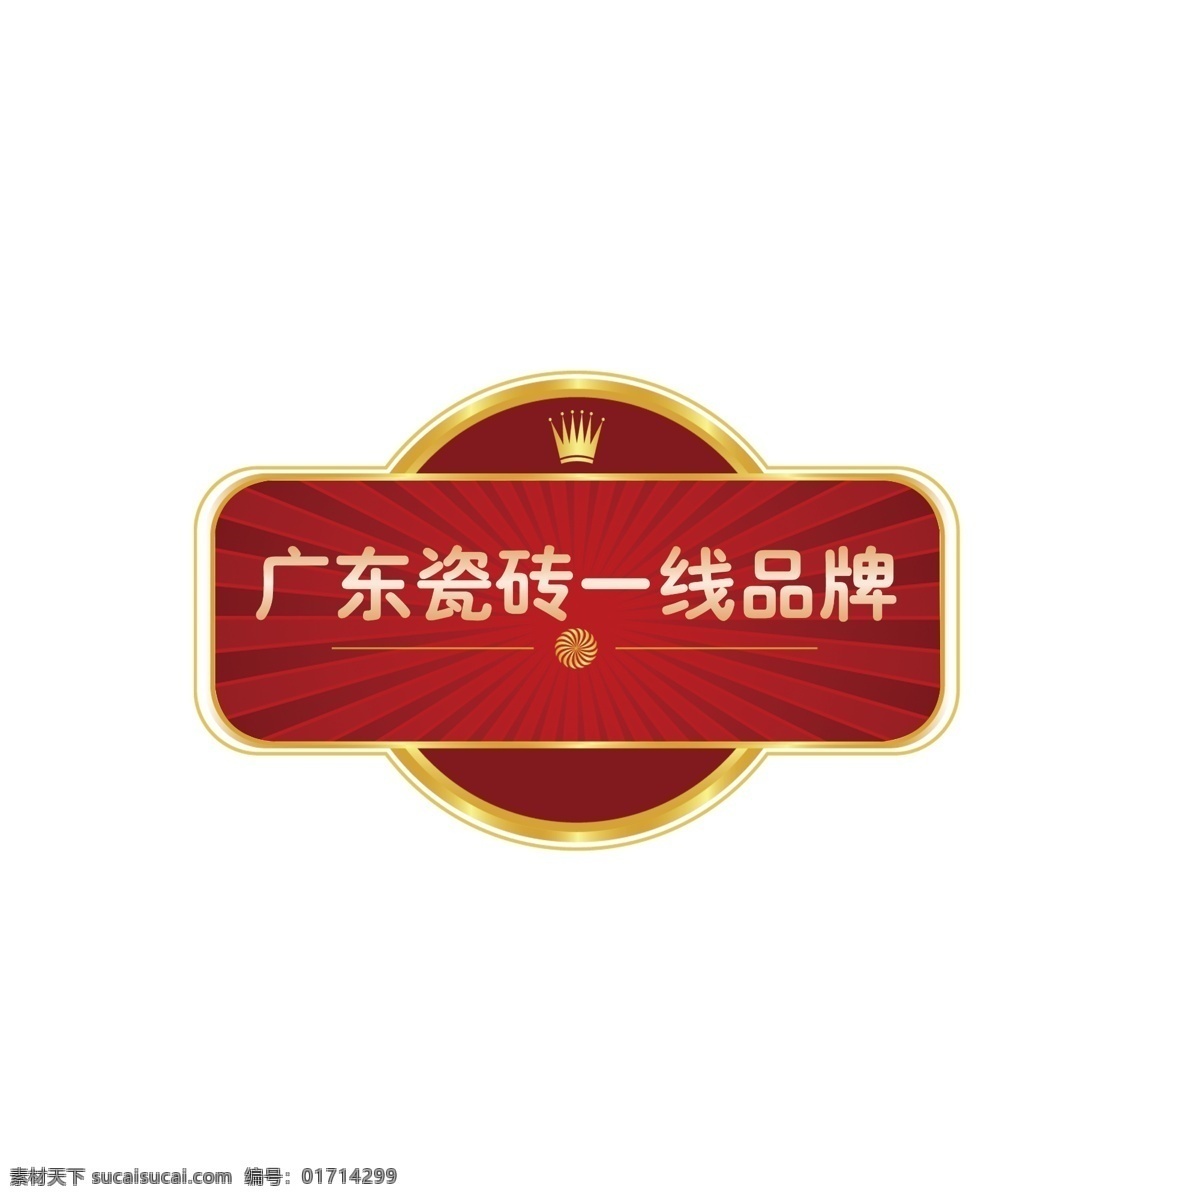 广东 品牌 标签 标贴 瓷砖 第一品牌 psd源文件